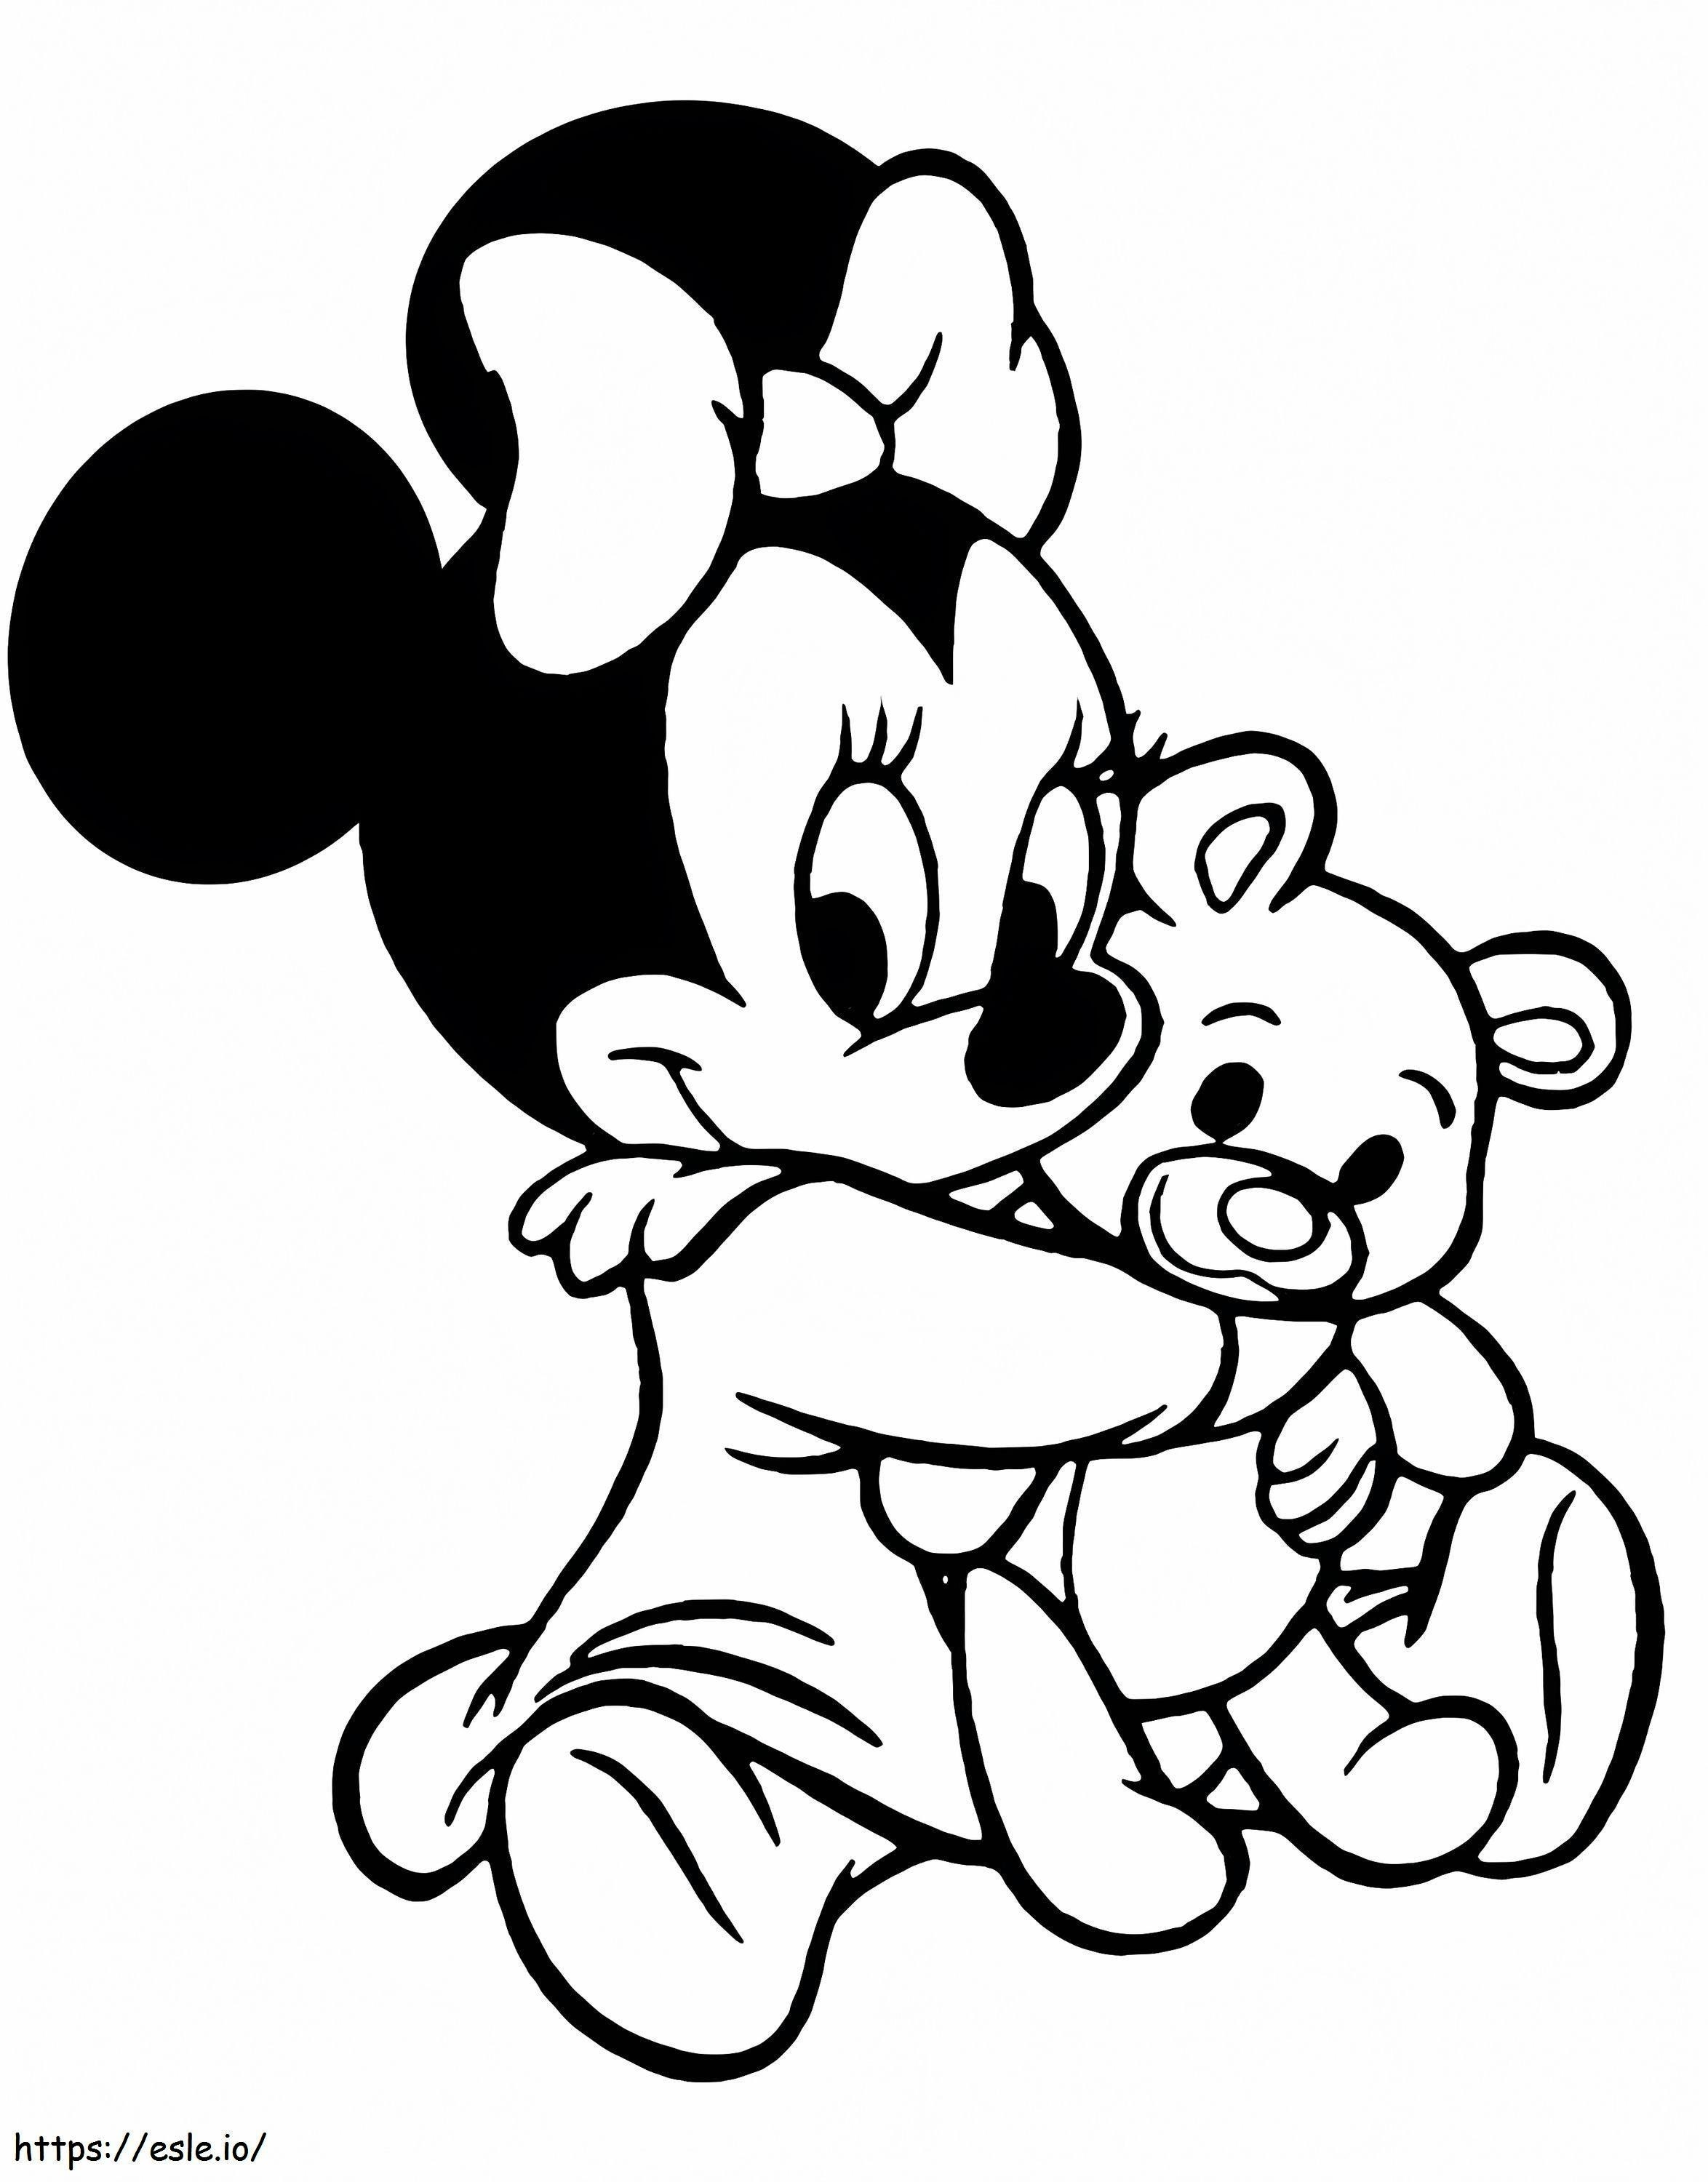 Minnie Mouse și plușul lui de colorat